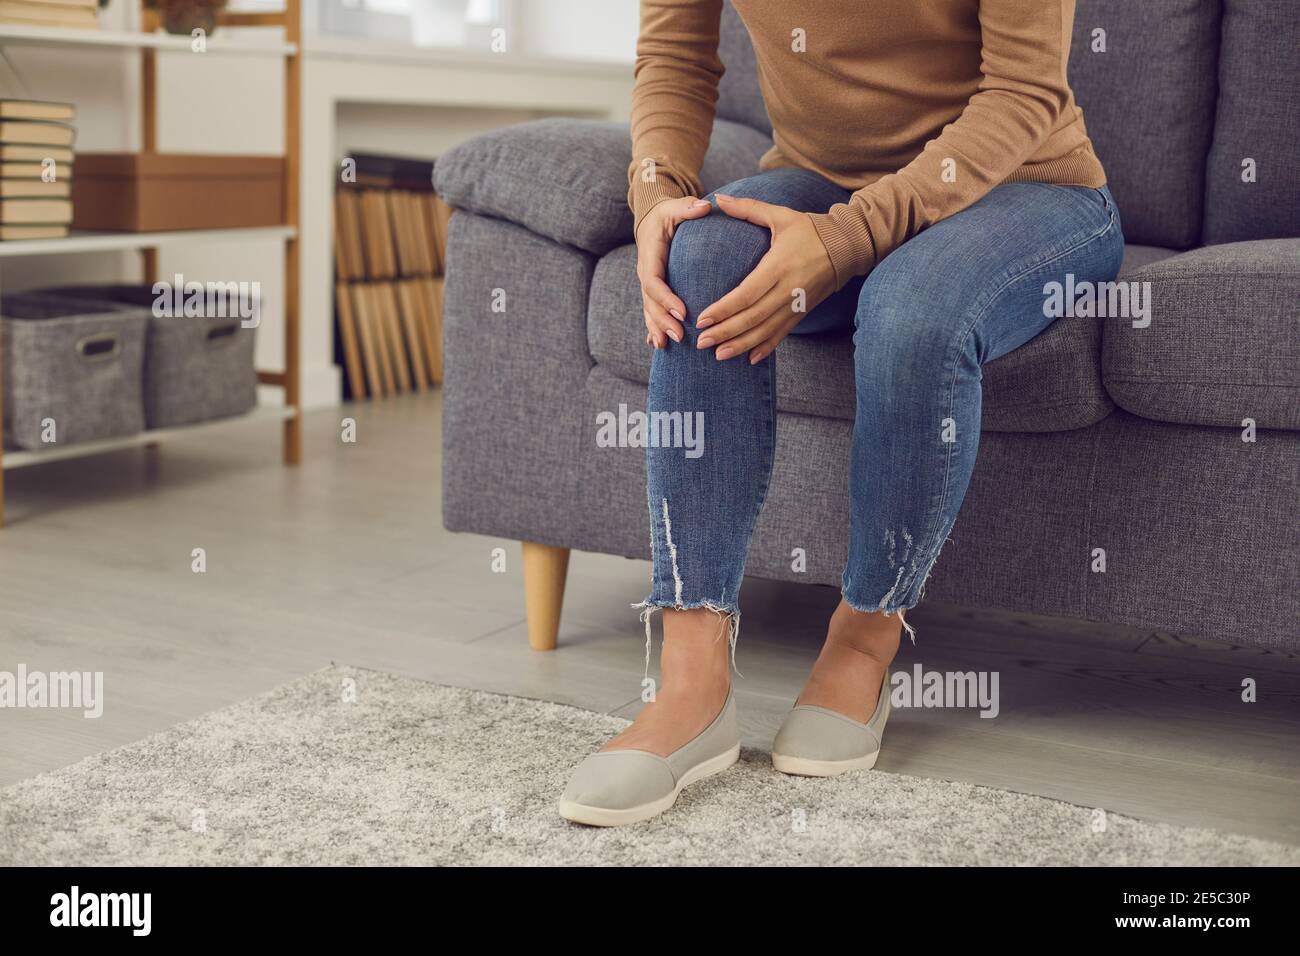 Frau, die rheumatische Störung hat oder Knie verletzt hat Hausunfall massiert ihre Kniekappe Stockfoto